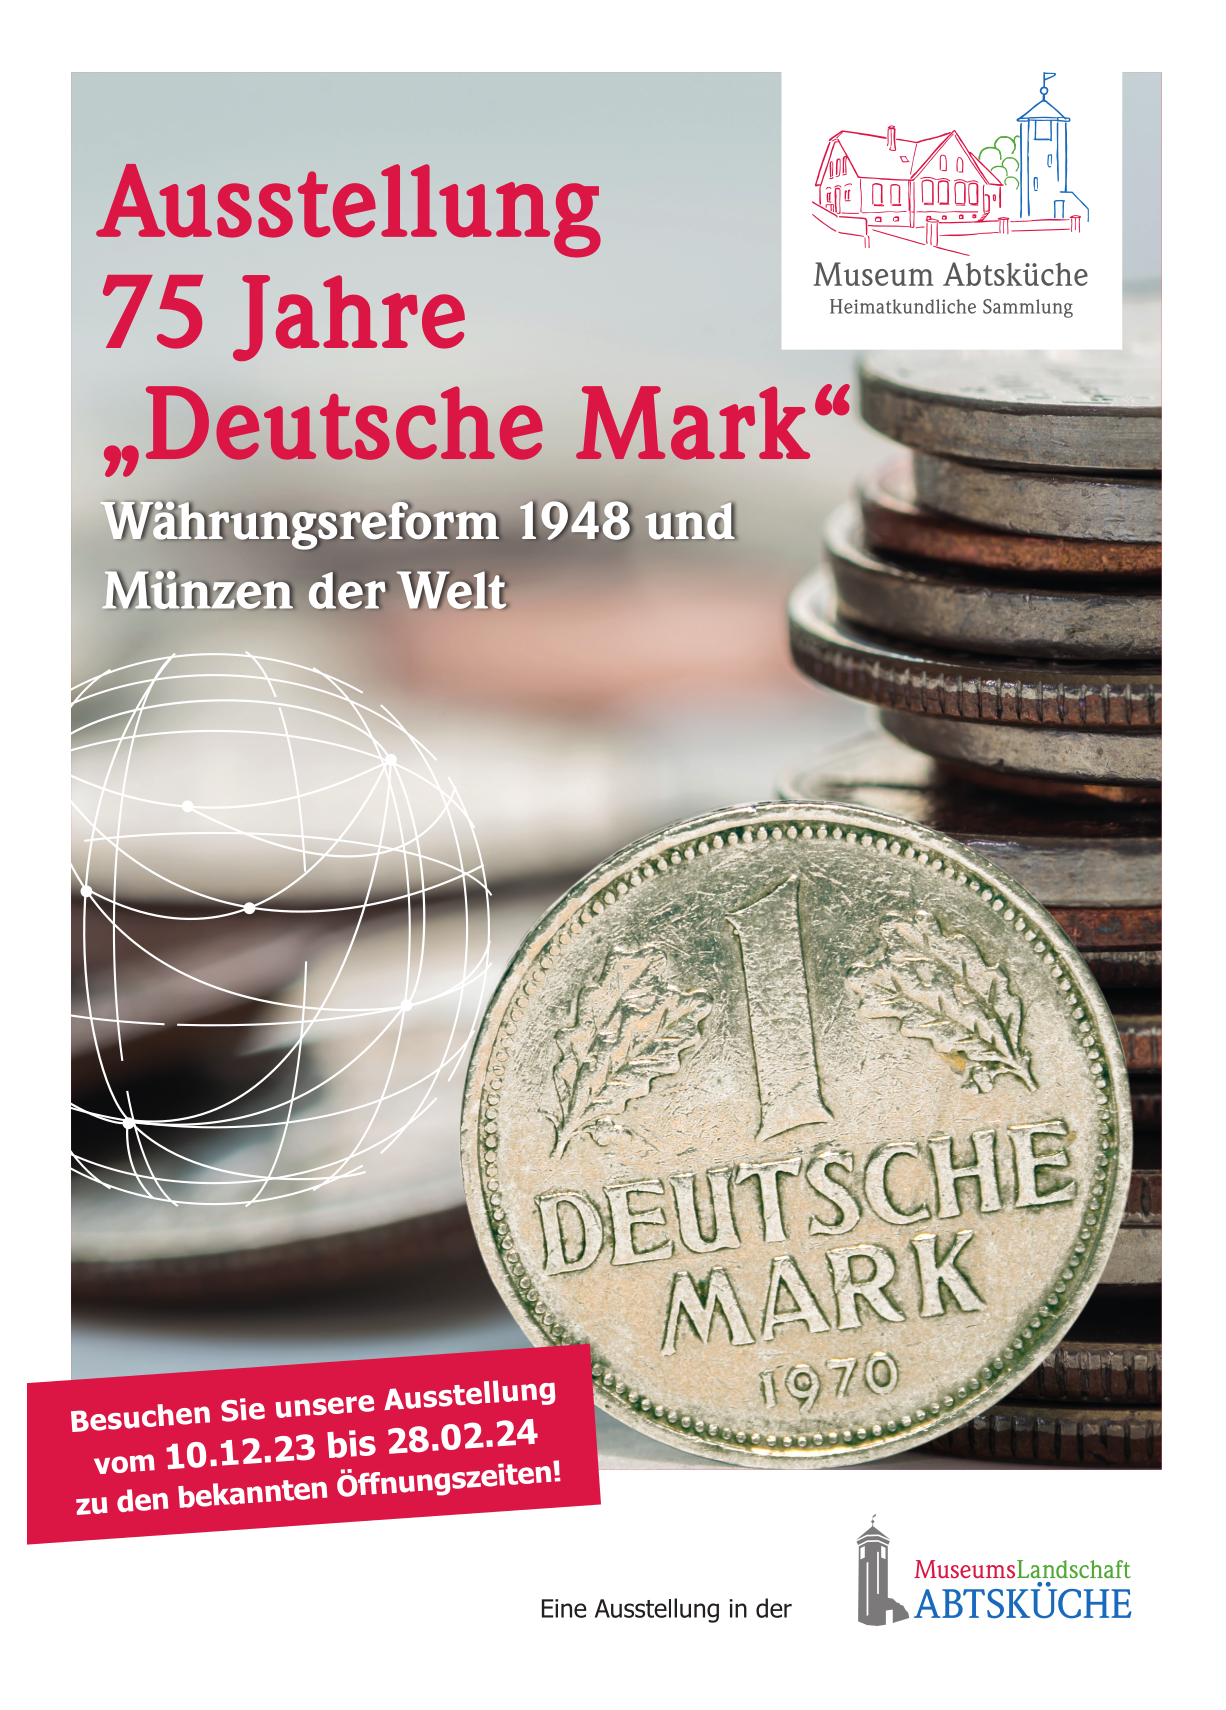 Ausstellung 75 Jahre Deutsche Mark und Münzen der Welt